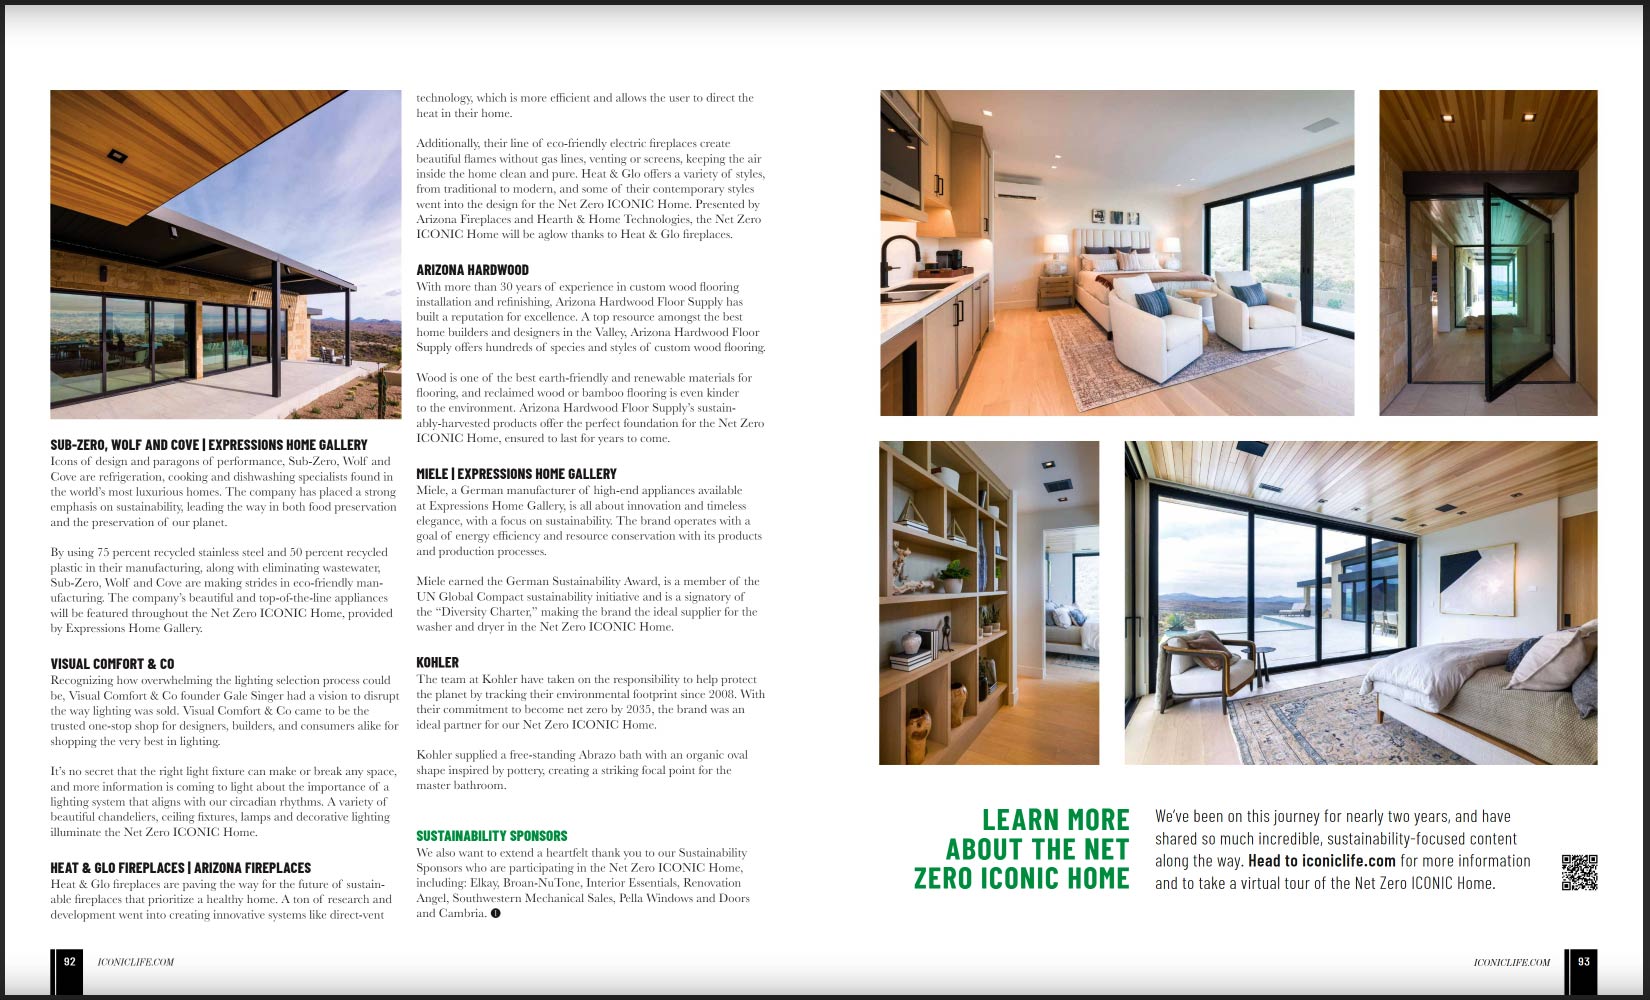 AZ Hardwood Flooring Supply Highlighted in ICONIC Magazine